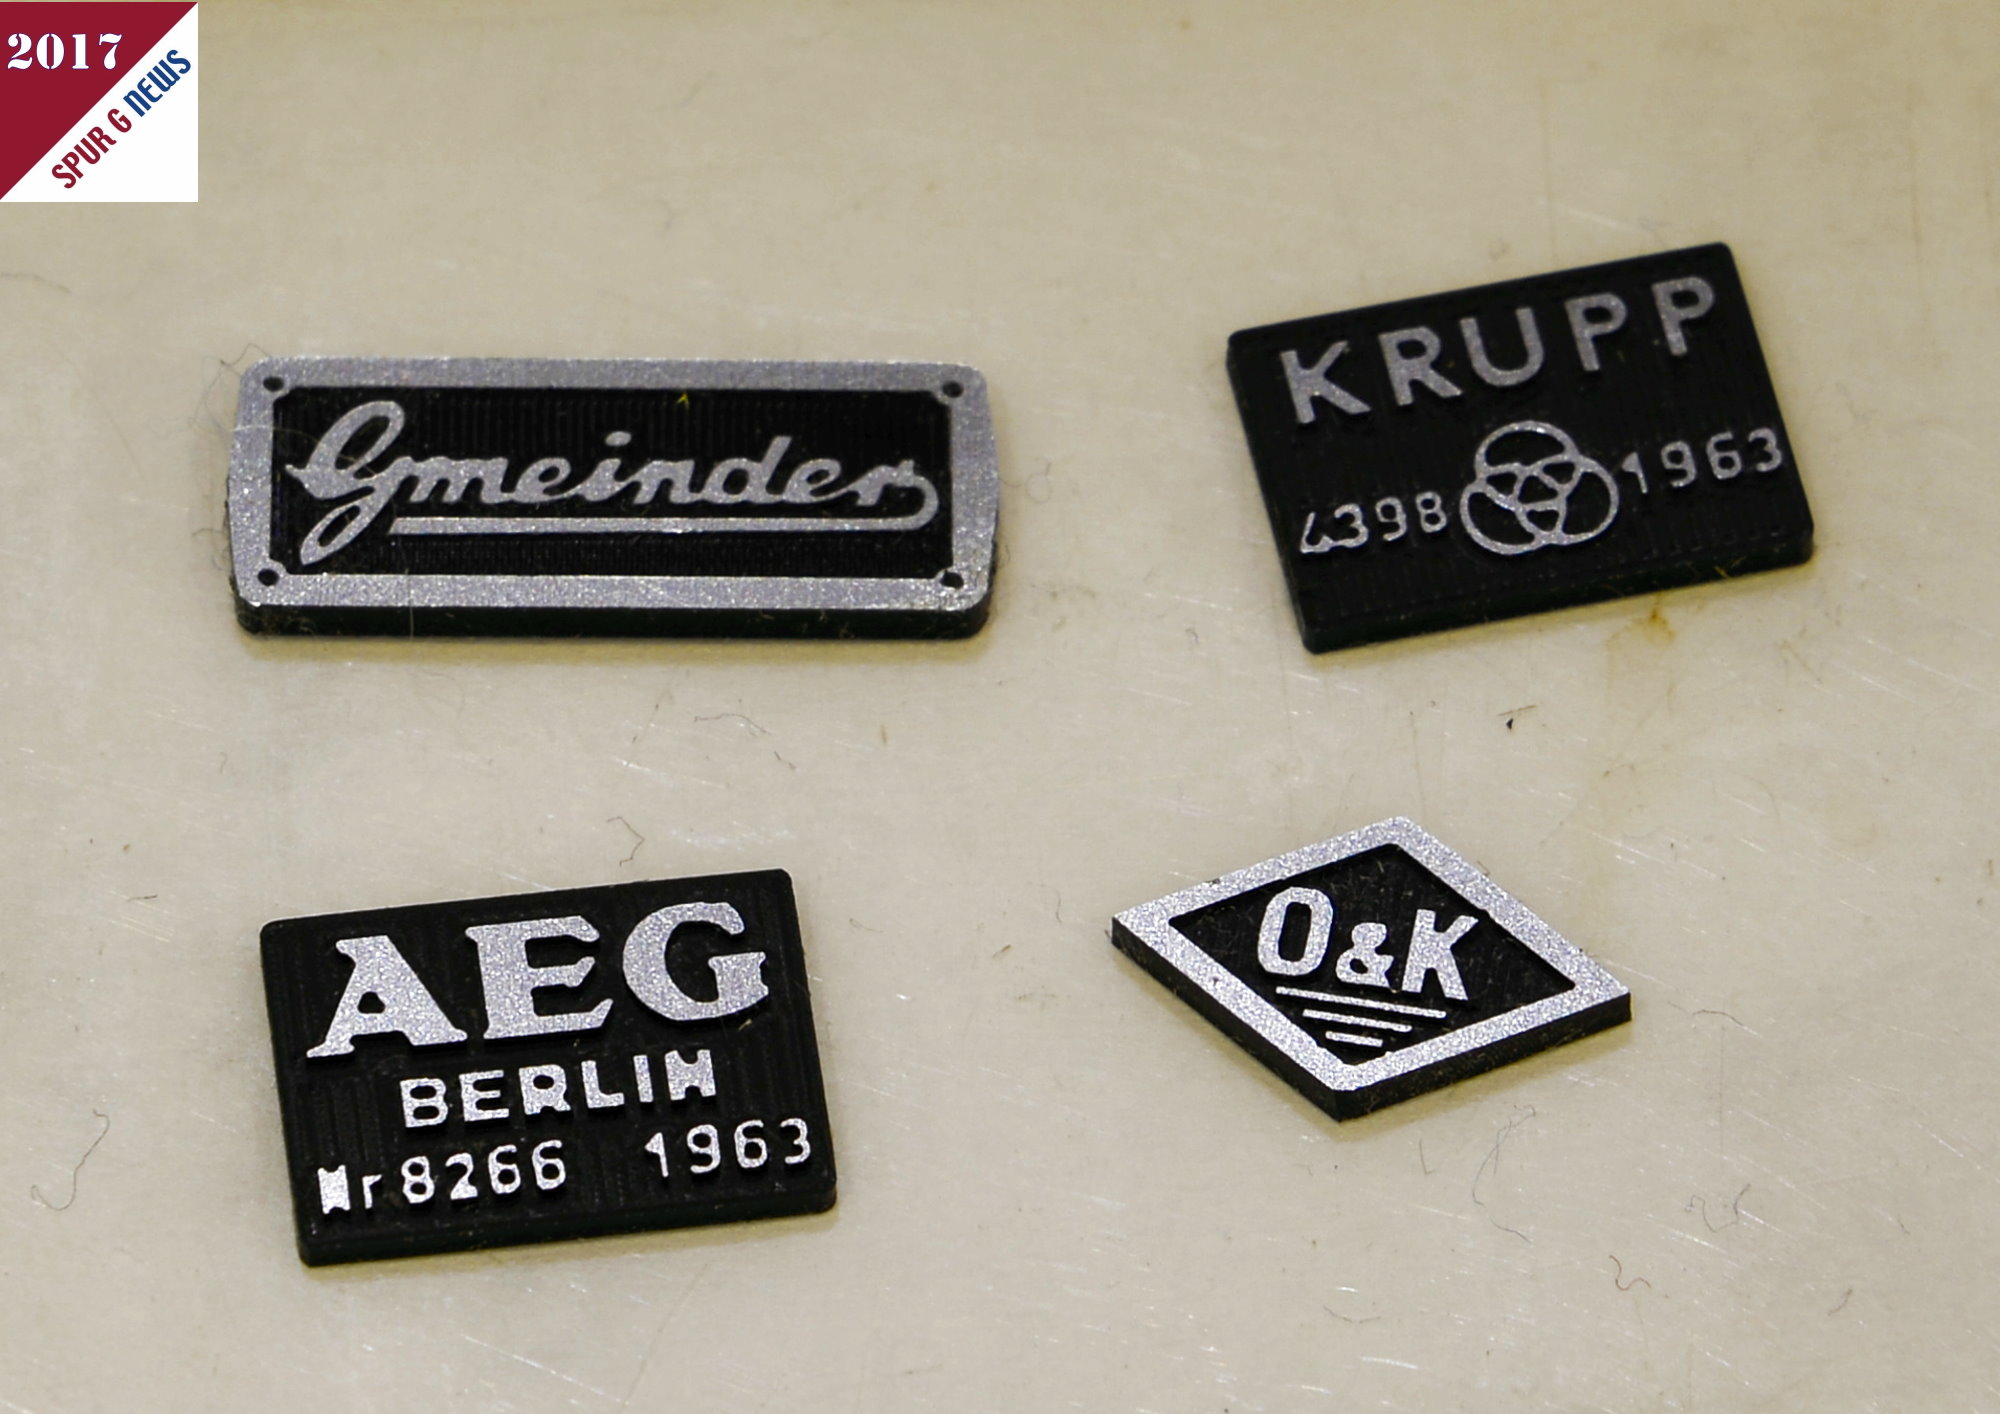 Aus der Modellbau-Werkstatt von Bertram Heyn kommen diese 4 unterschiedlichen Typenschilder fr "Gmeinder"-Loks, Krupp-Lokomotiven, AEG-Elektrofahrzeuge und die Feldbahn von Orenstein & Koppel.